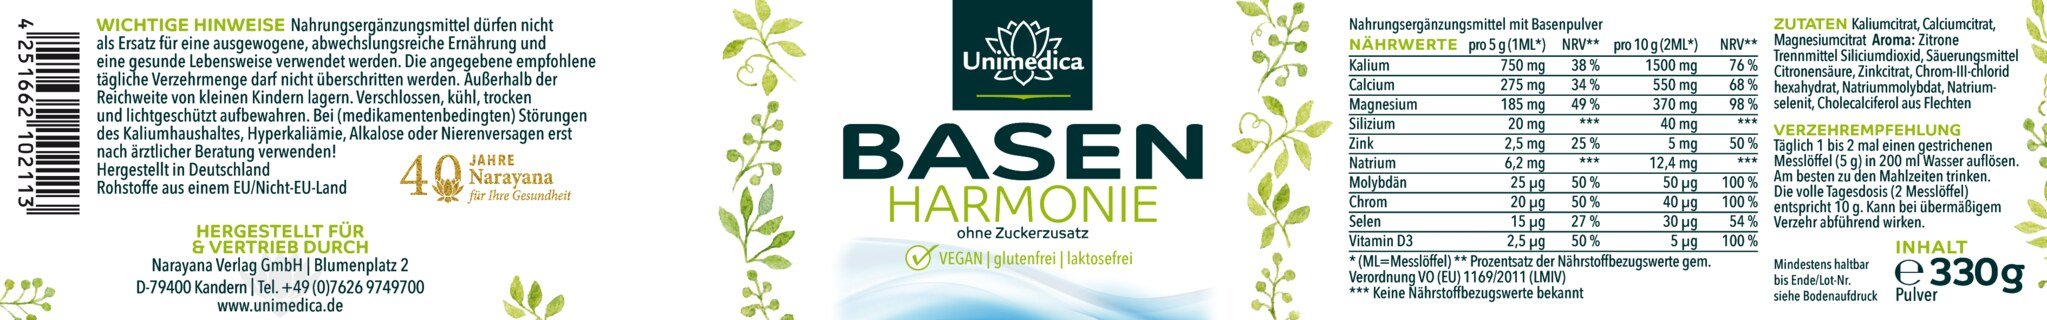 2er Sparset: Basen Harmonie - 2 x 330 g - von Unimedica